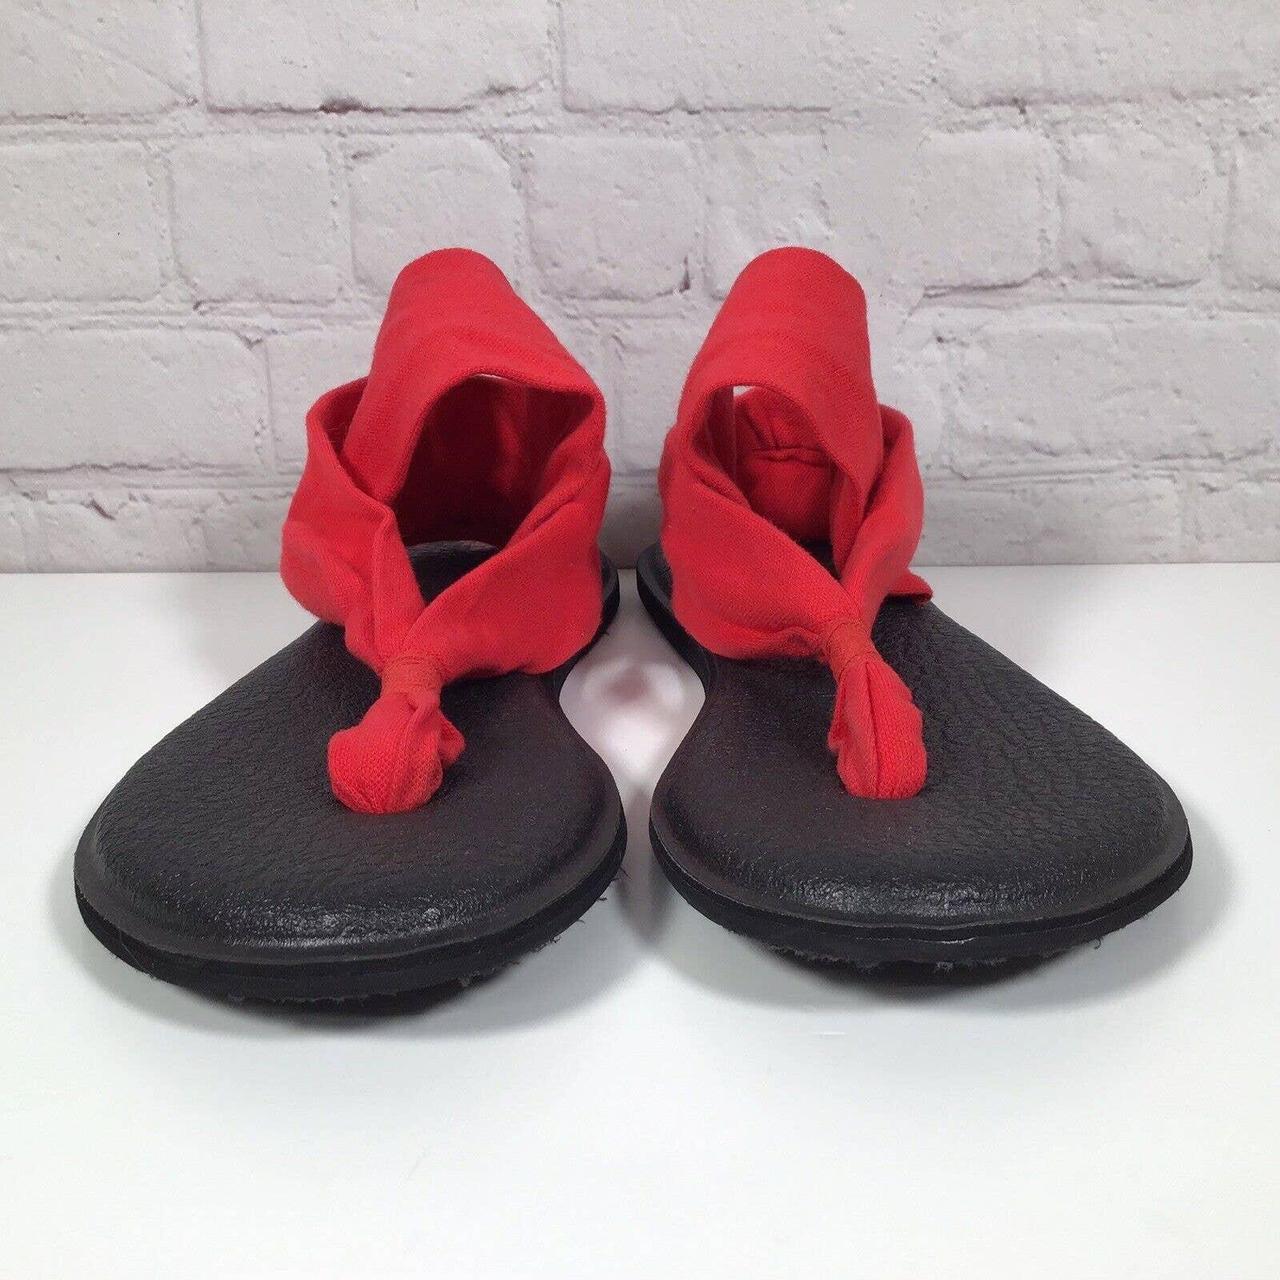 Sanuk yoga sling sandals size 10 (never worn) - Depop